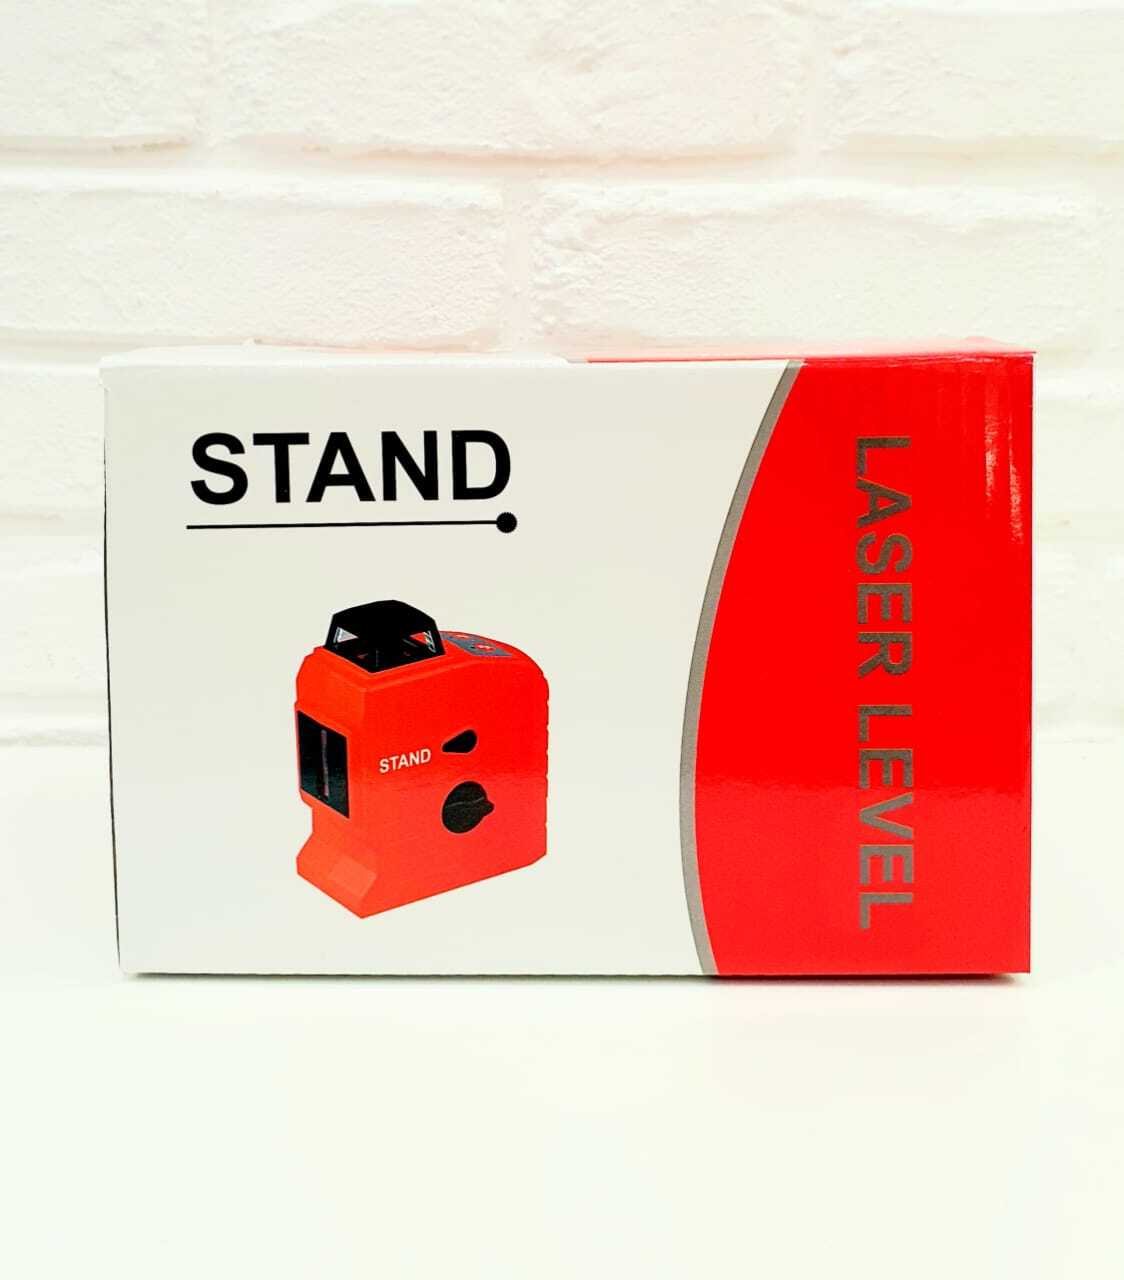 Лазерный уровень Stand t5-360. Запчасти для лазерного уровня Stand. ЗУ для лазерного уровня Stand t5. Уровень Stand t2 зарядка.